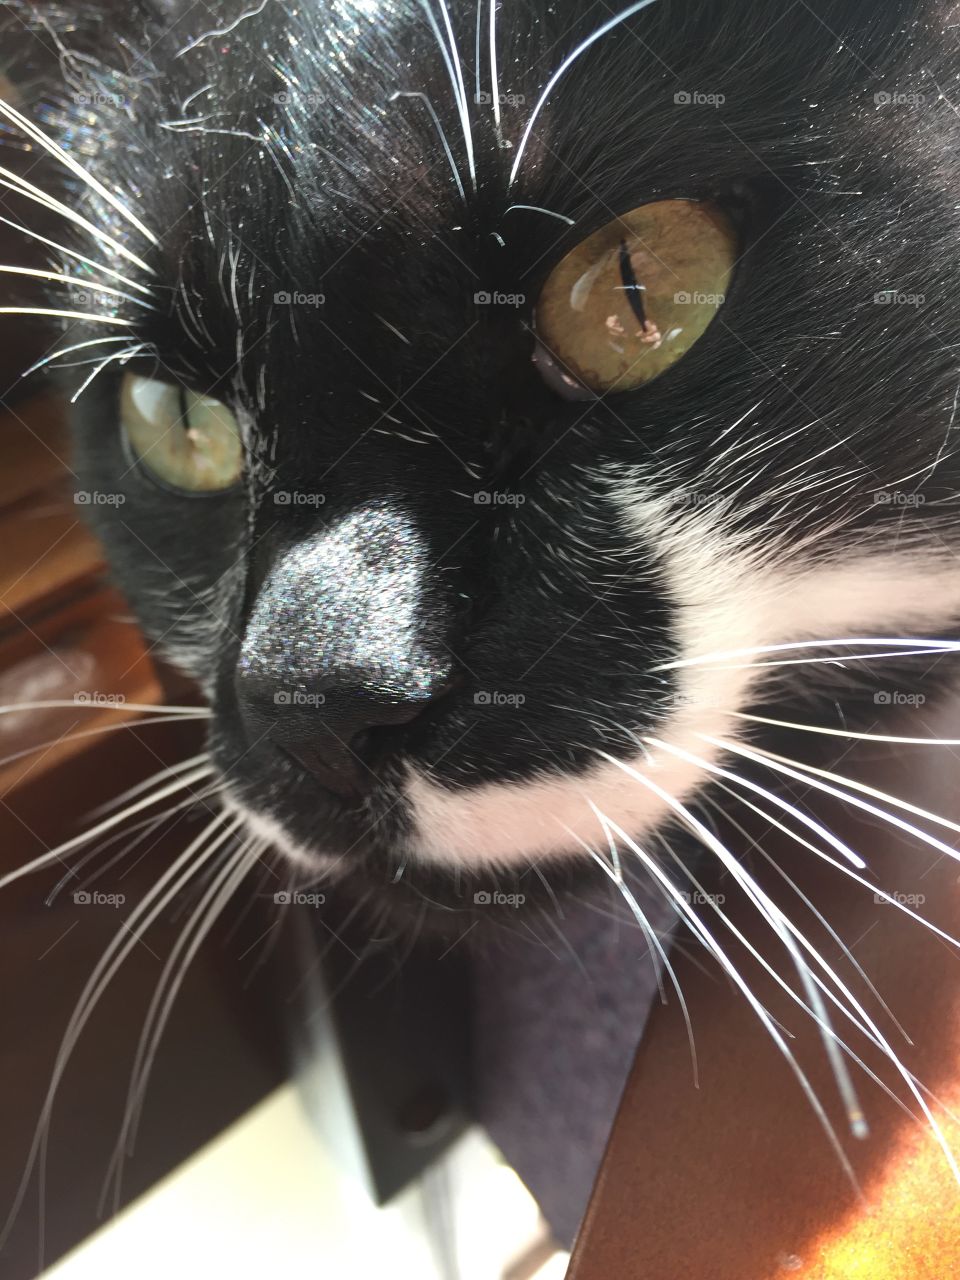 Cat close up